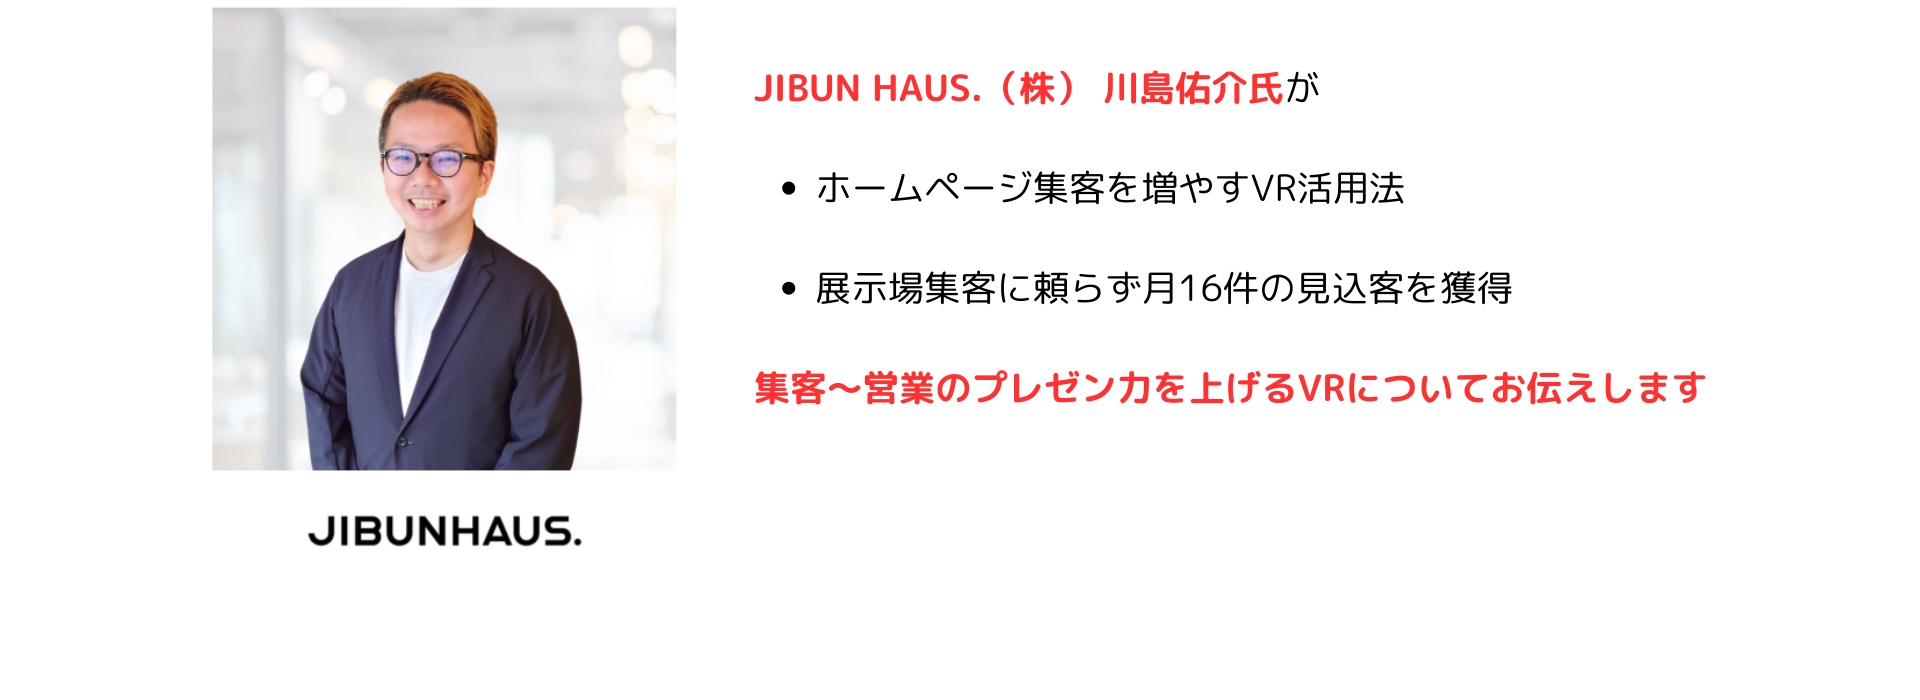 JIBUNHOUSE川島氏が
・ホームページ集客を増やすVR活用法
・展示場集客に頼らず月16件の見込み客を獲得
集客〜営業のプレゼン力を上げるVRについてお伝えします